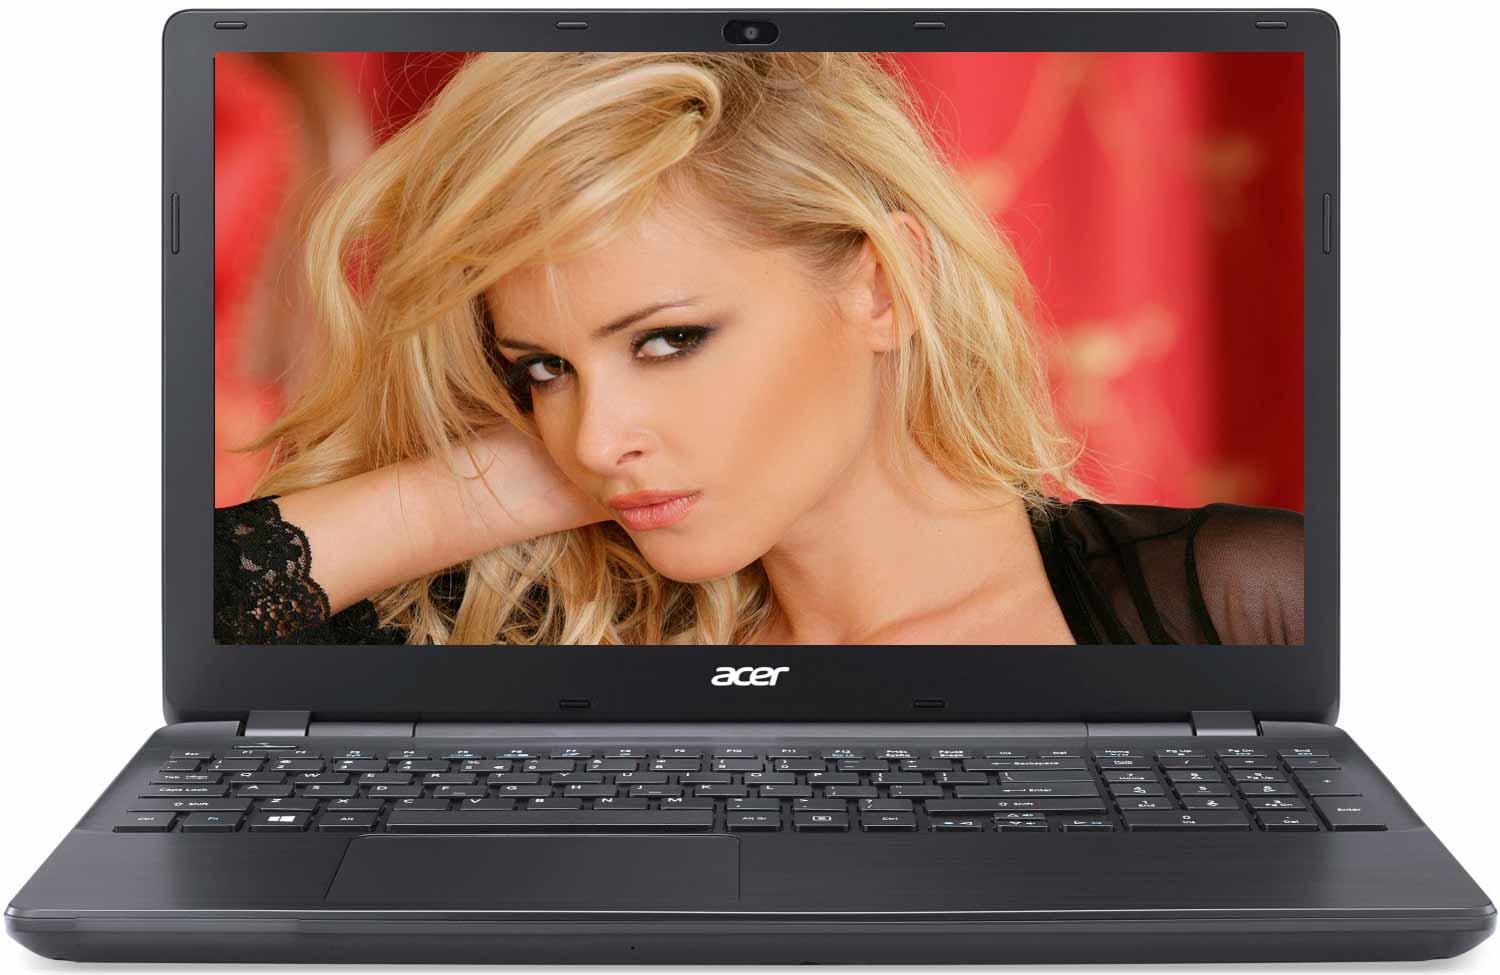   Acer Extensa EX2519-P47W (NX.EFAER.105)  1